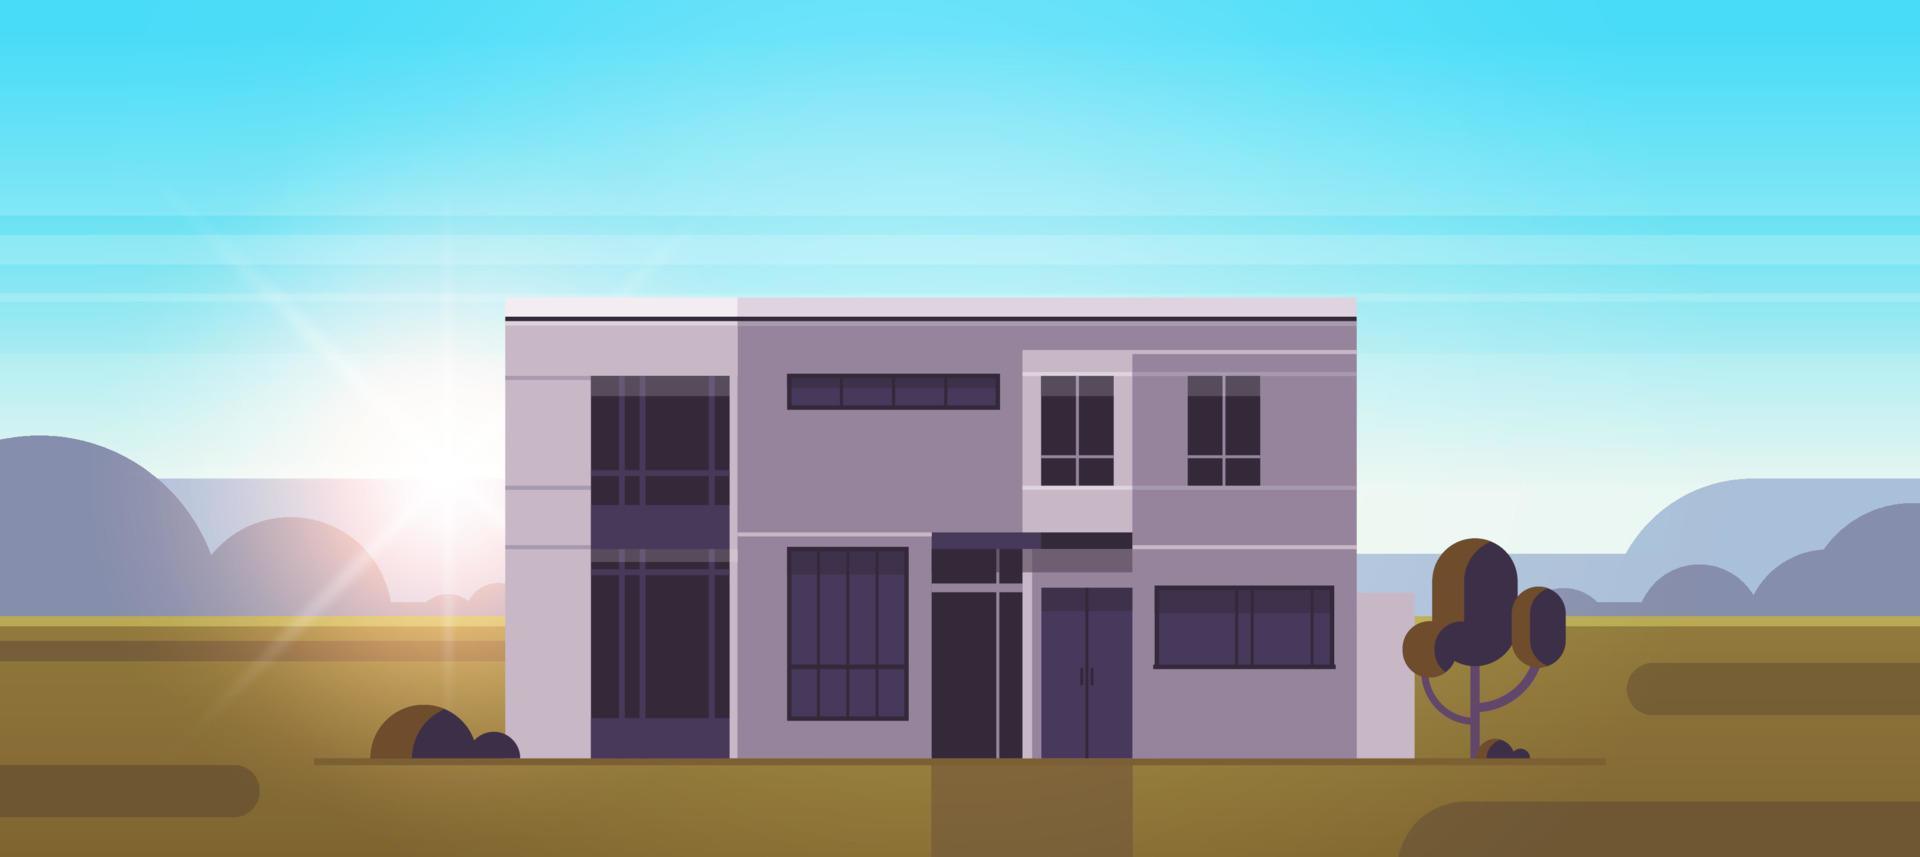 exterior de la construcción de casas modernas y planes de diseño horizontal de la fachada del edificio urbano ilustración vectorial plana. vector